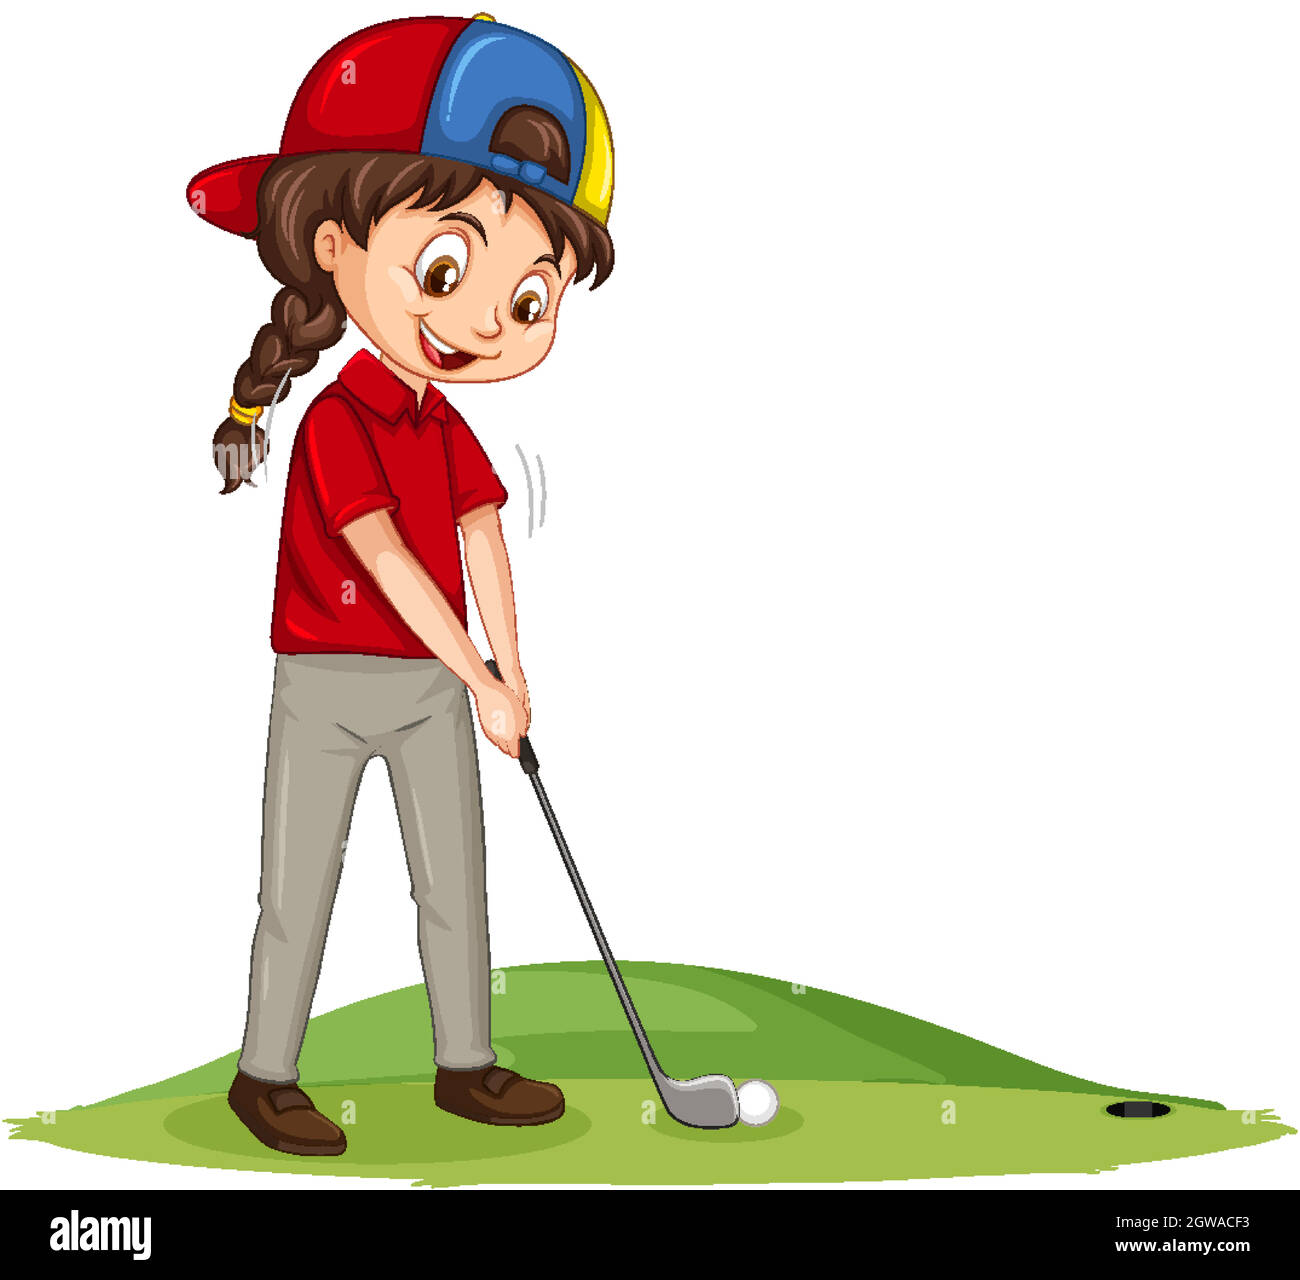 Jeune joueur de golf personnage de dessin animé jouant au golf Illustration de Vecteur